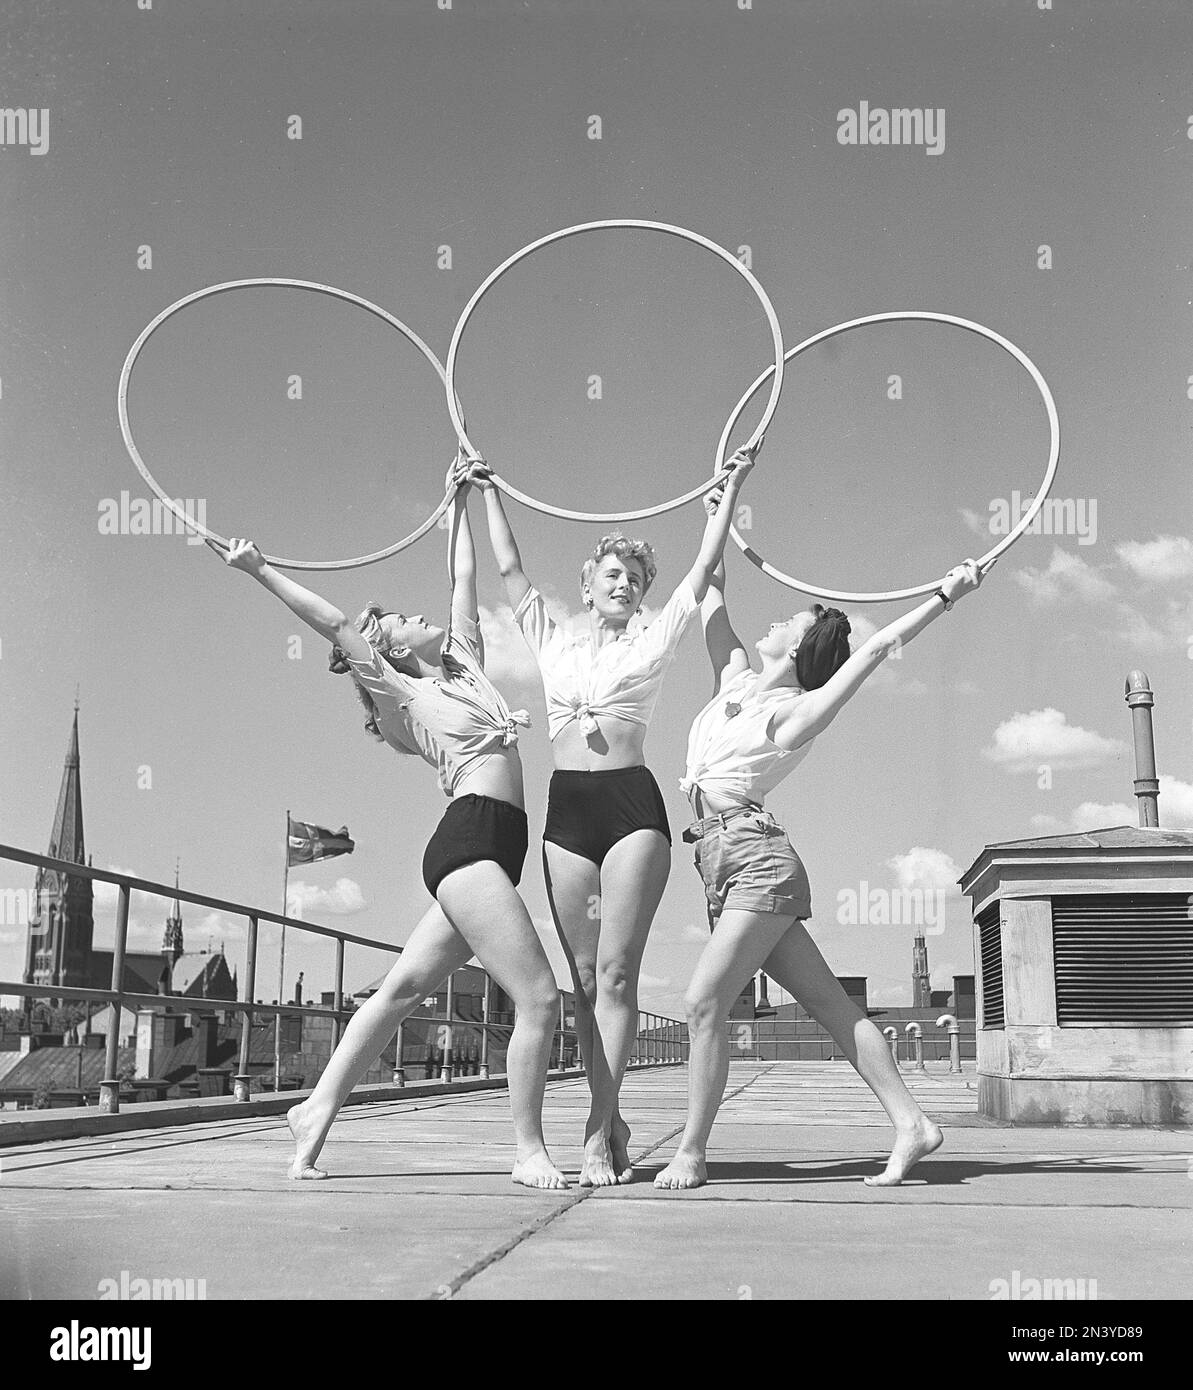 Gymnastik in den 1940er Jahren. Drei junge Turnerinnen stehen auf einem Dach in Stockholm und bilden ein symmetrisches Bild, wenn sie die drei Ringe über sich halten und posieren. Schweden 1945 Kristoffersson Ref O143-4 Stockfoto